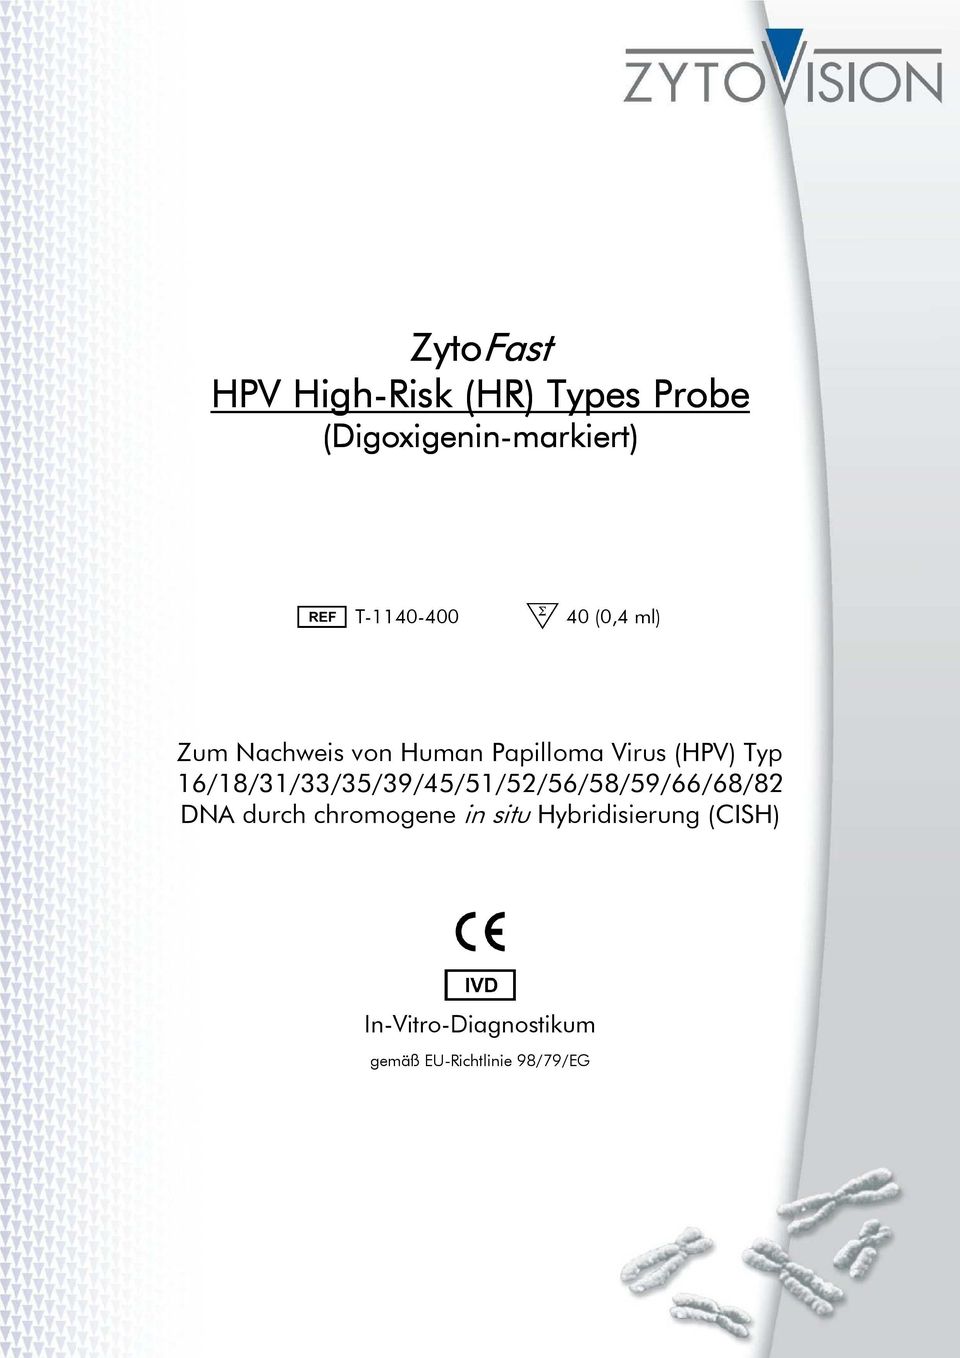 (HPV) Typ 16/18/31/33/35/39/45/51/52/56/58/59/66/68/82 DNA durch chromogene